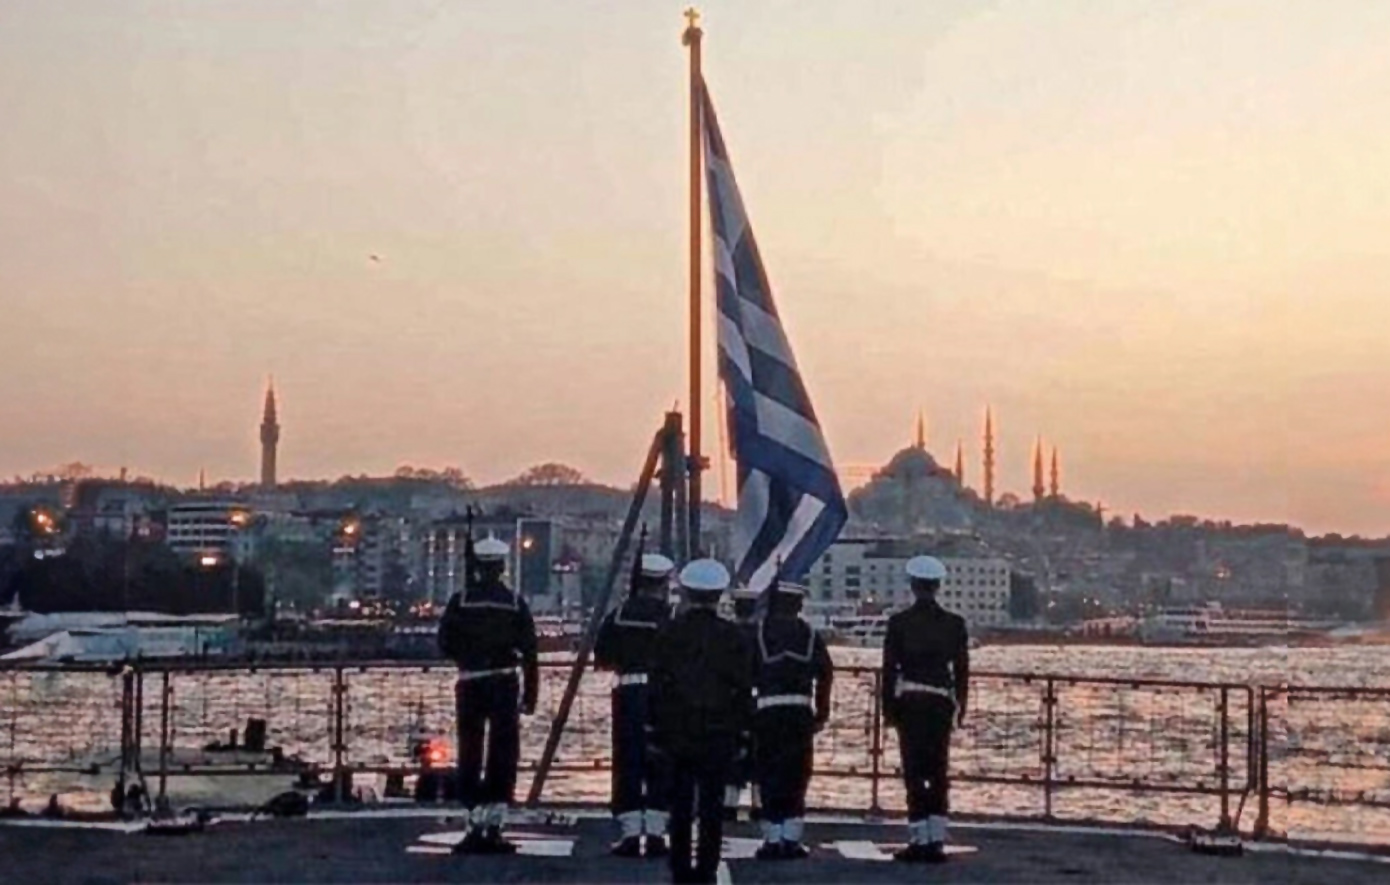 Η φωτογραφία της φρεγάτας «Θεμιστοκλής», που υψώνει την ελληνική σημαία στον Βόσπορο, κάνει τον γύρο του διαδικτύου